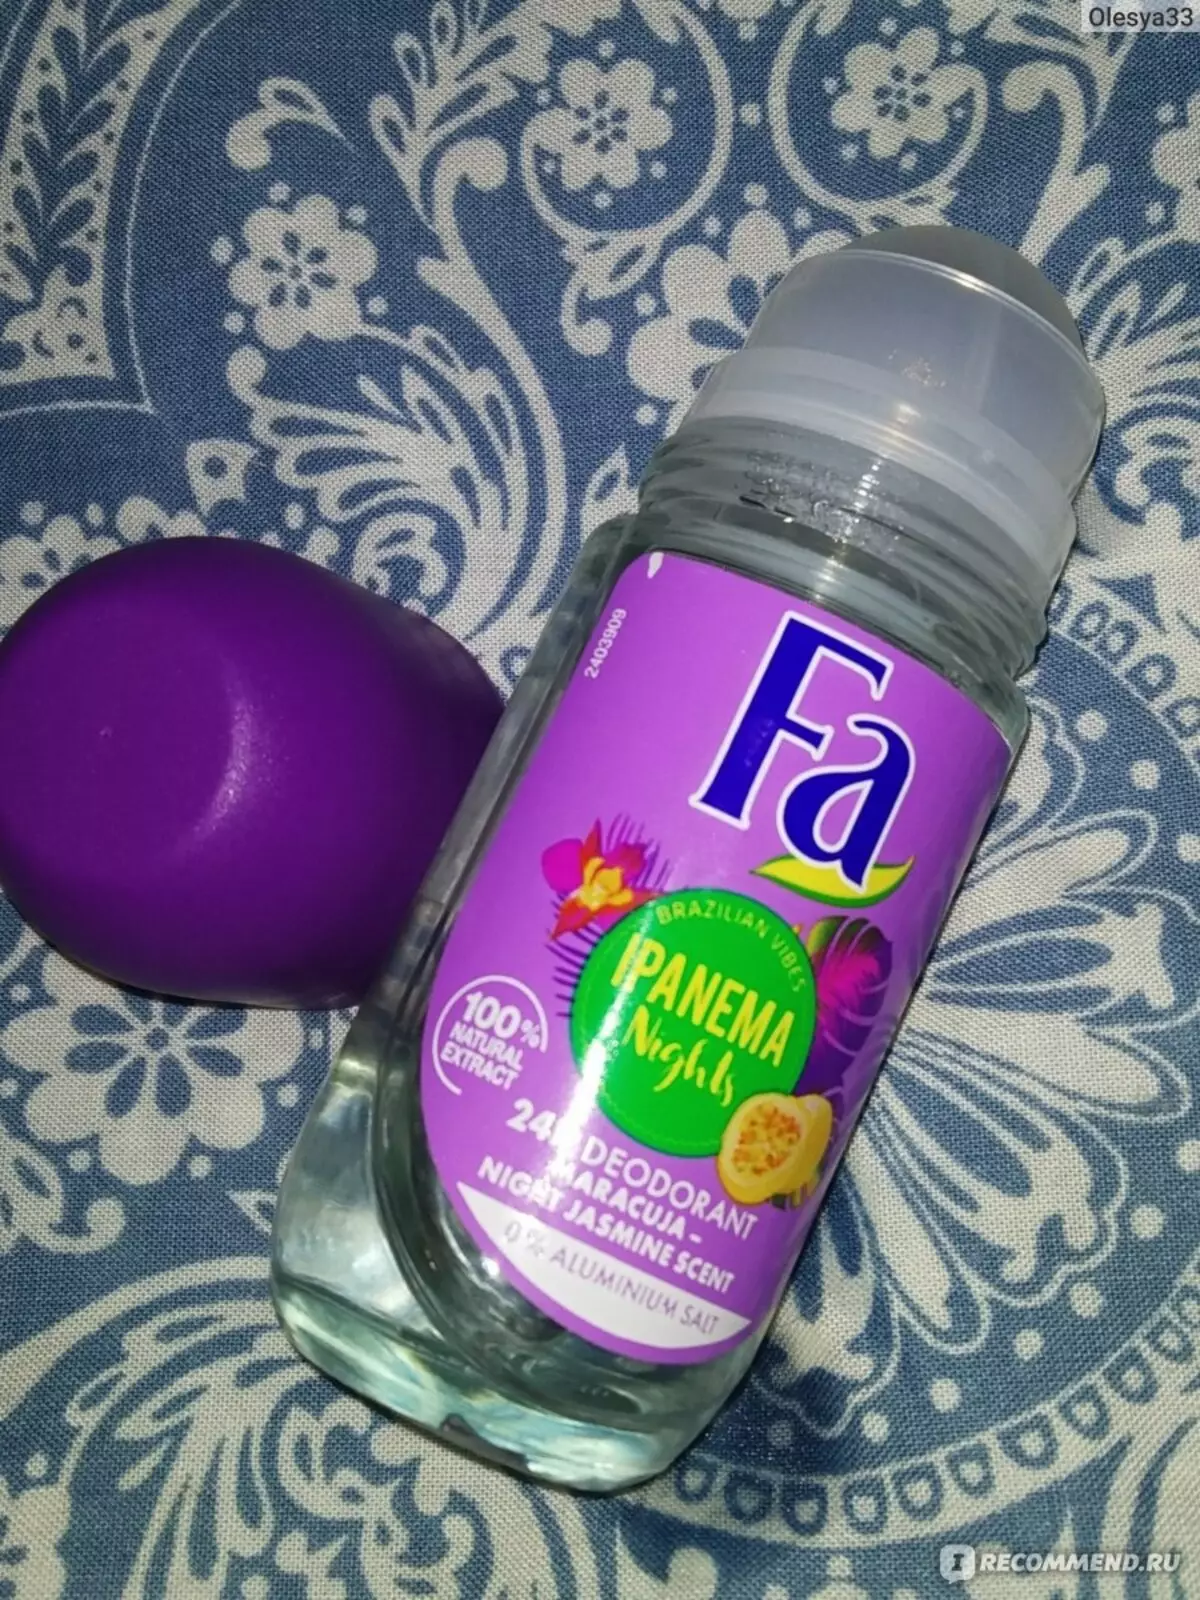 Deodorant Fa: Ball Deodorants Ilman alumiinisuolat, suihkeet-antiperspiranssit 